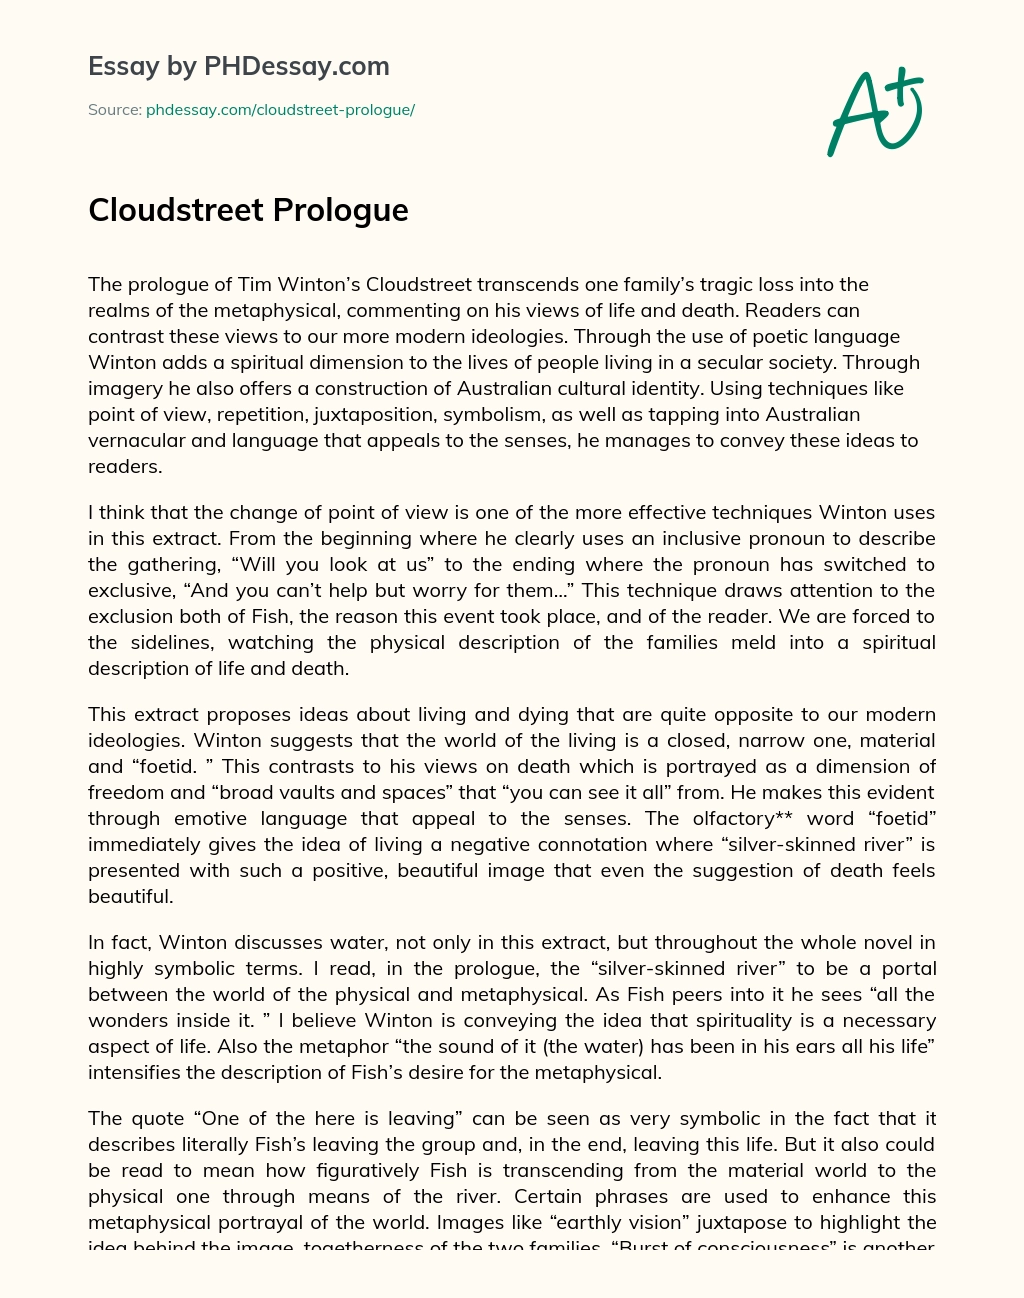 Cloudstreet Prologue essay